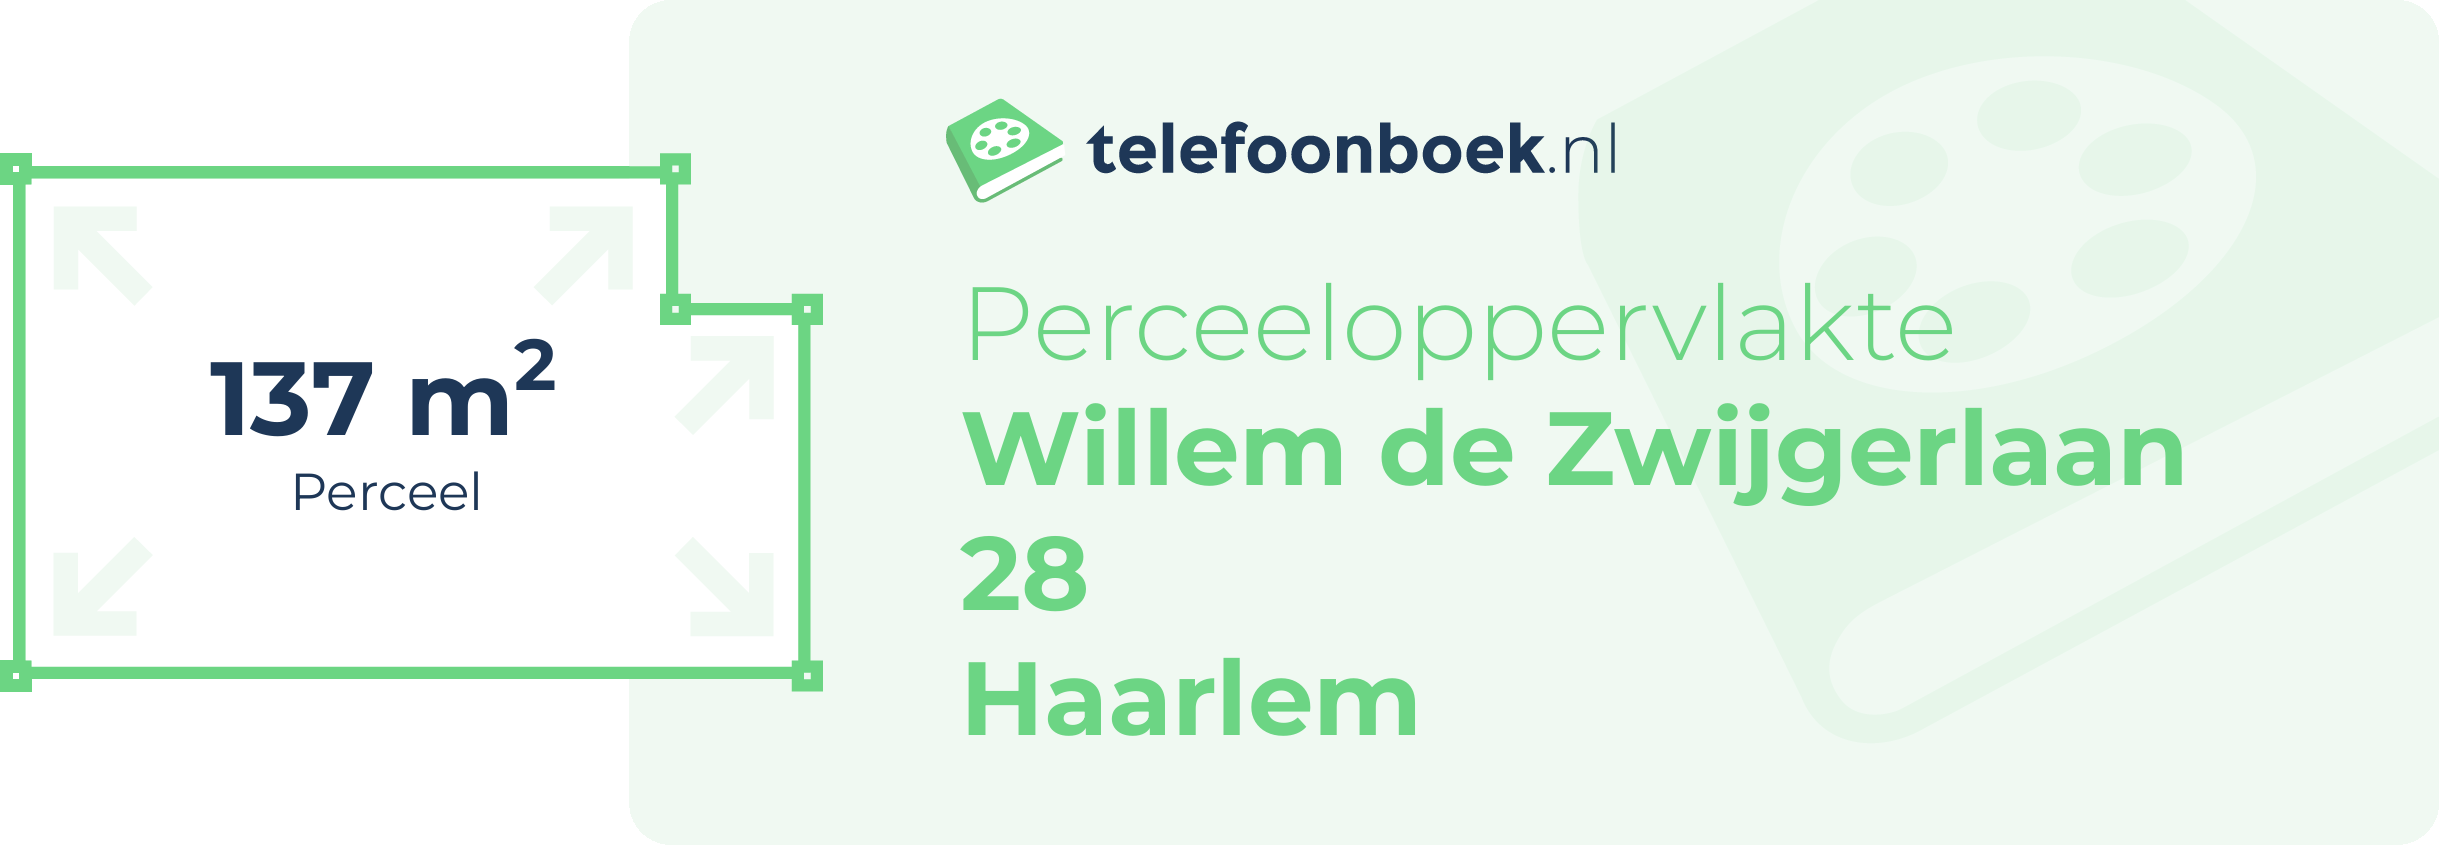 Perceeloppervlakte Willem De Zwijgerlaan 28 Haarlem